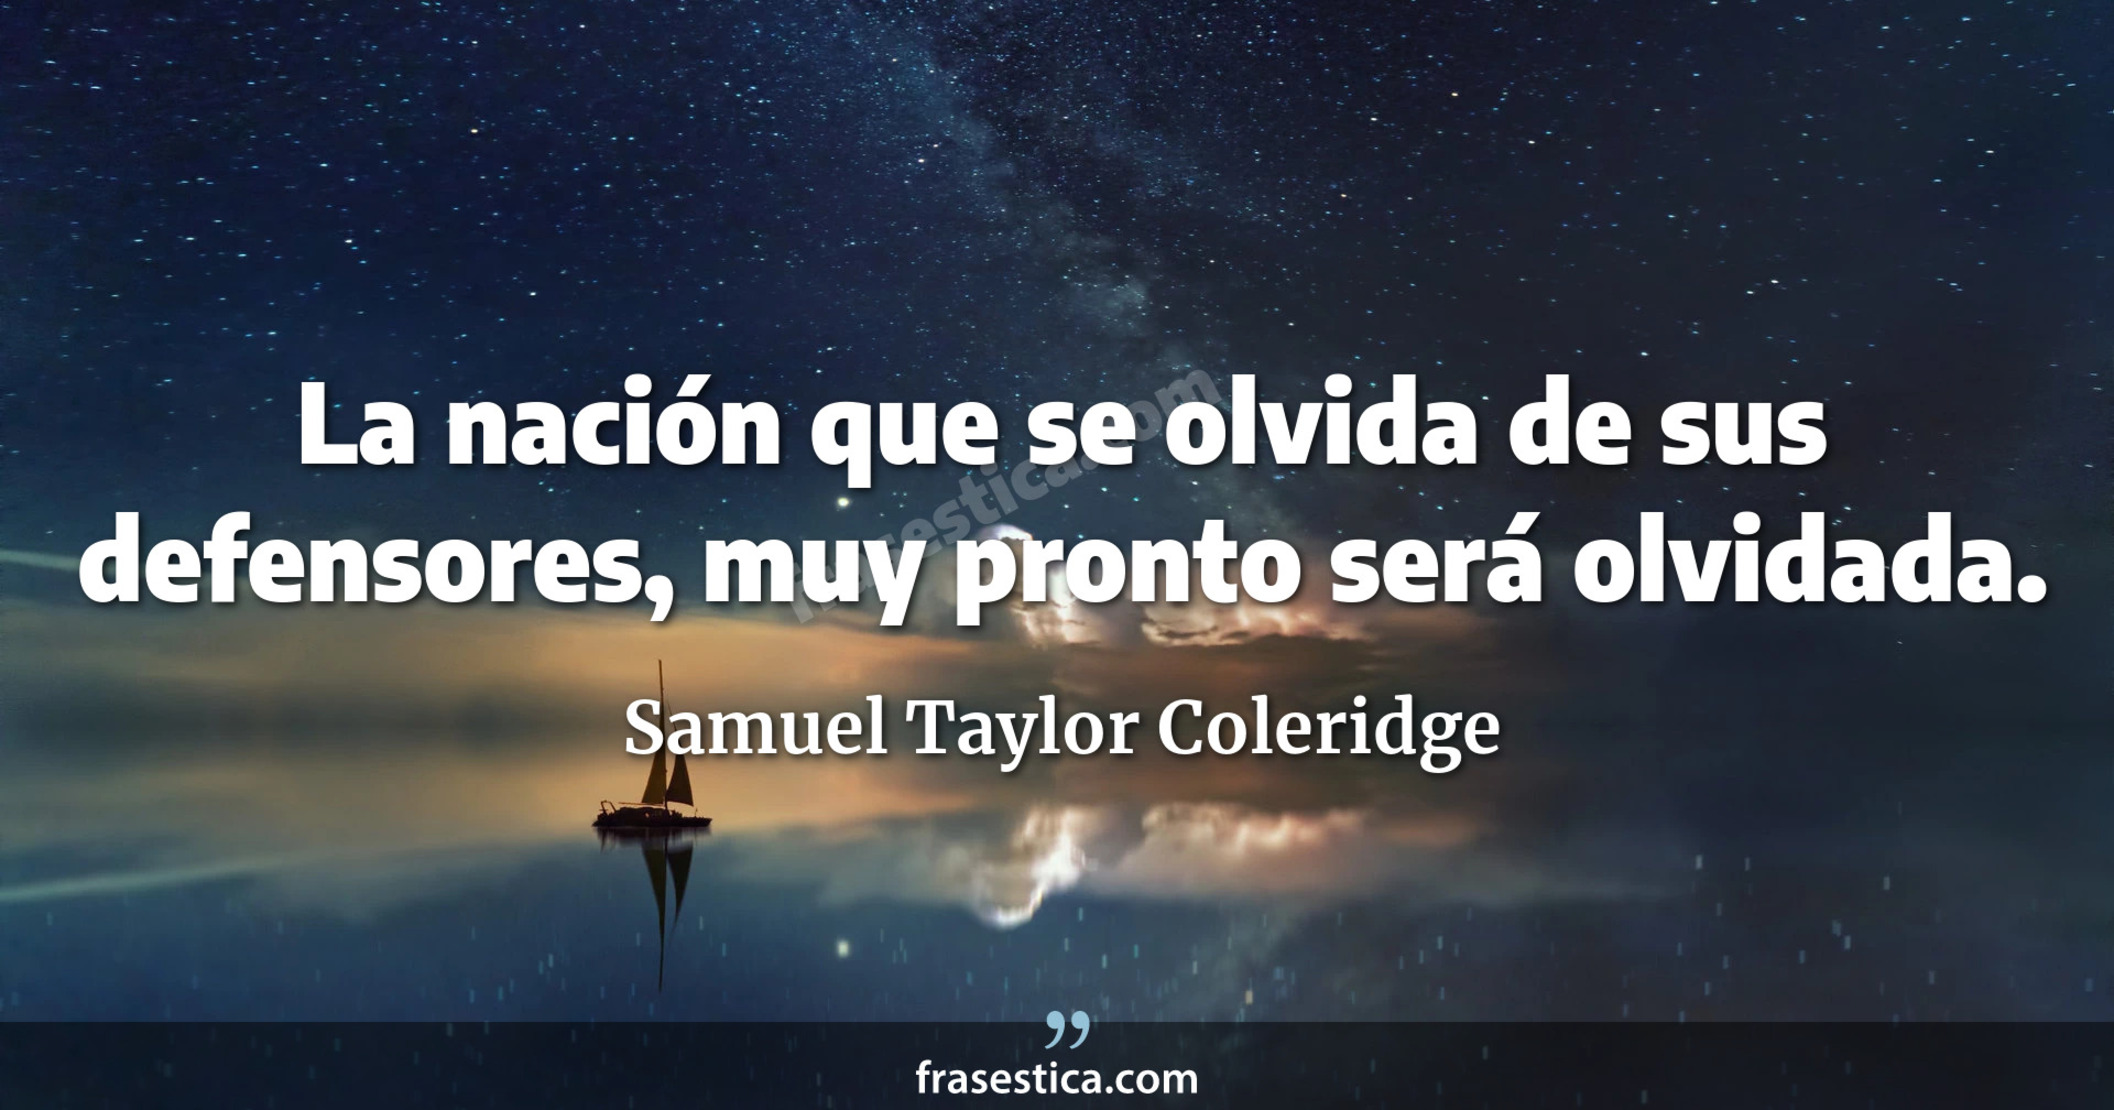 La nación que se olvida de sus defensores, muy pronto será olvidada. - Samuel Taylor Coleridge